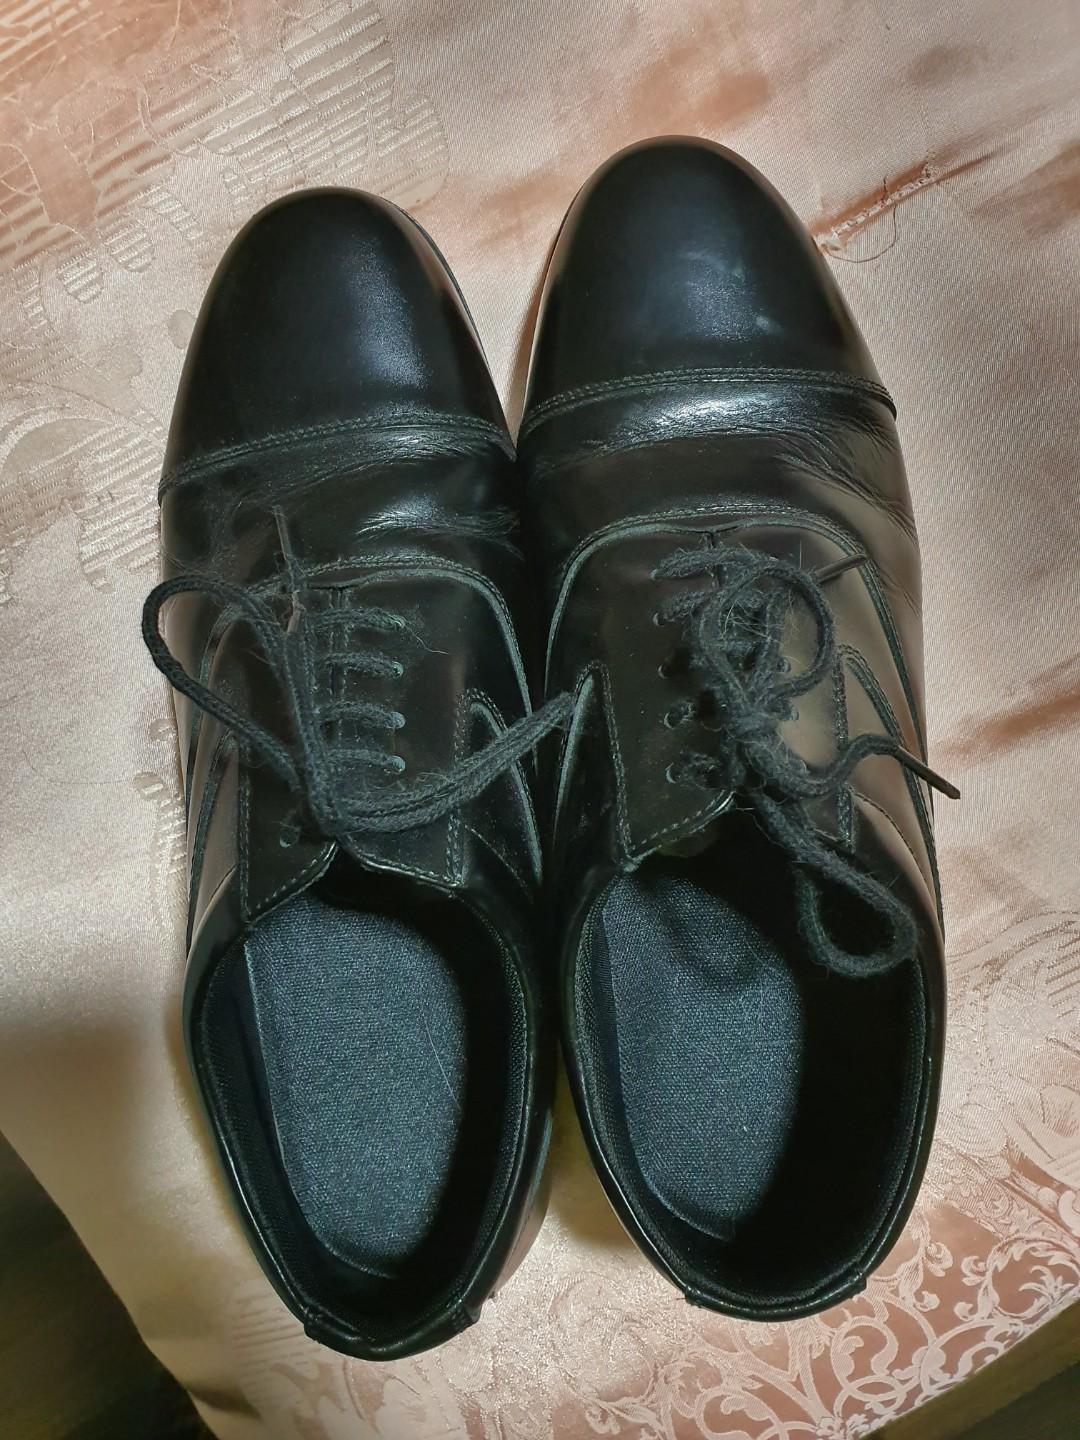 size 12 mens dress shoes